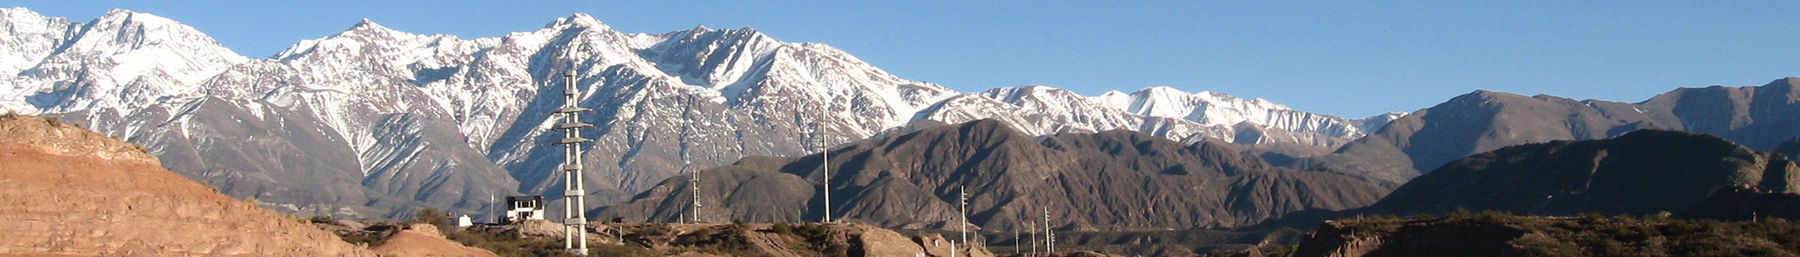 Andes banner.jpg